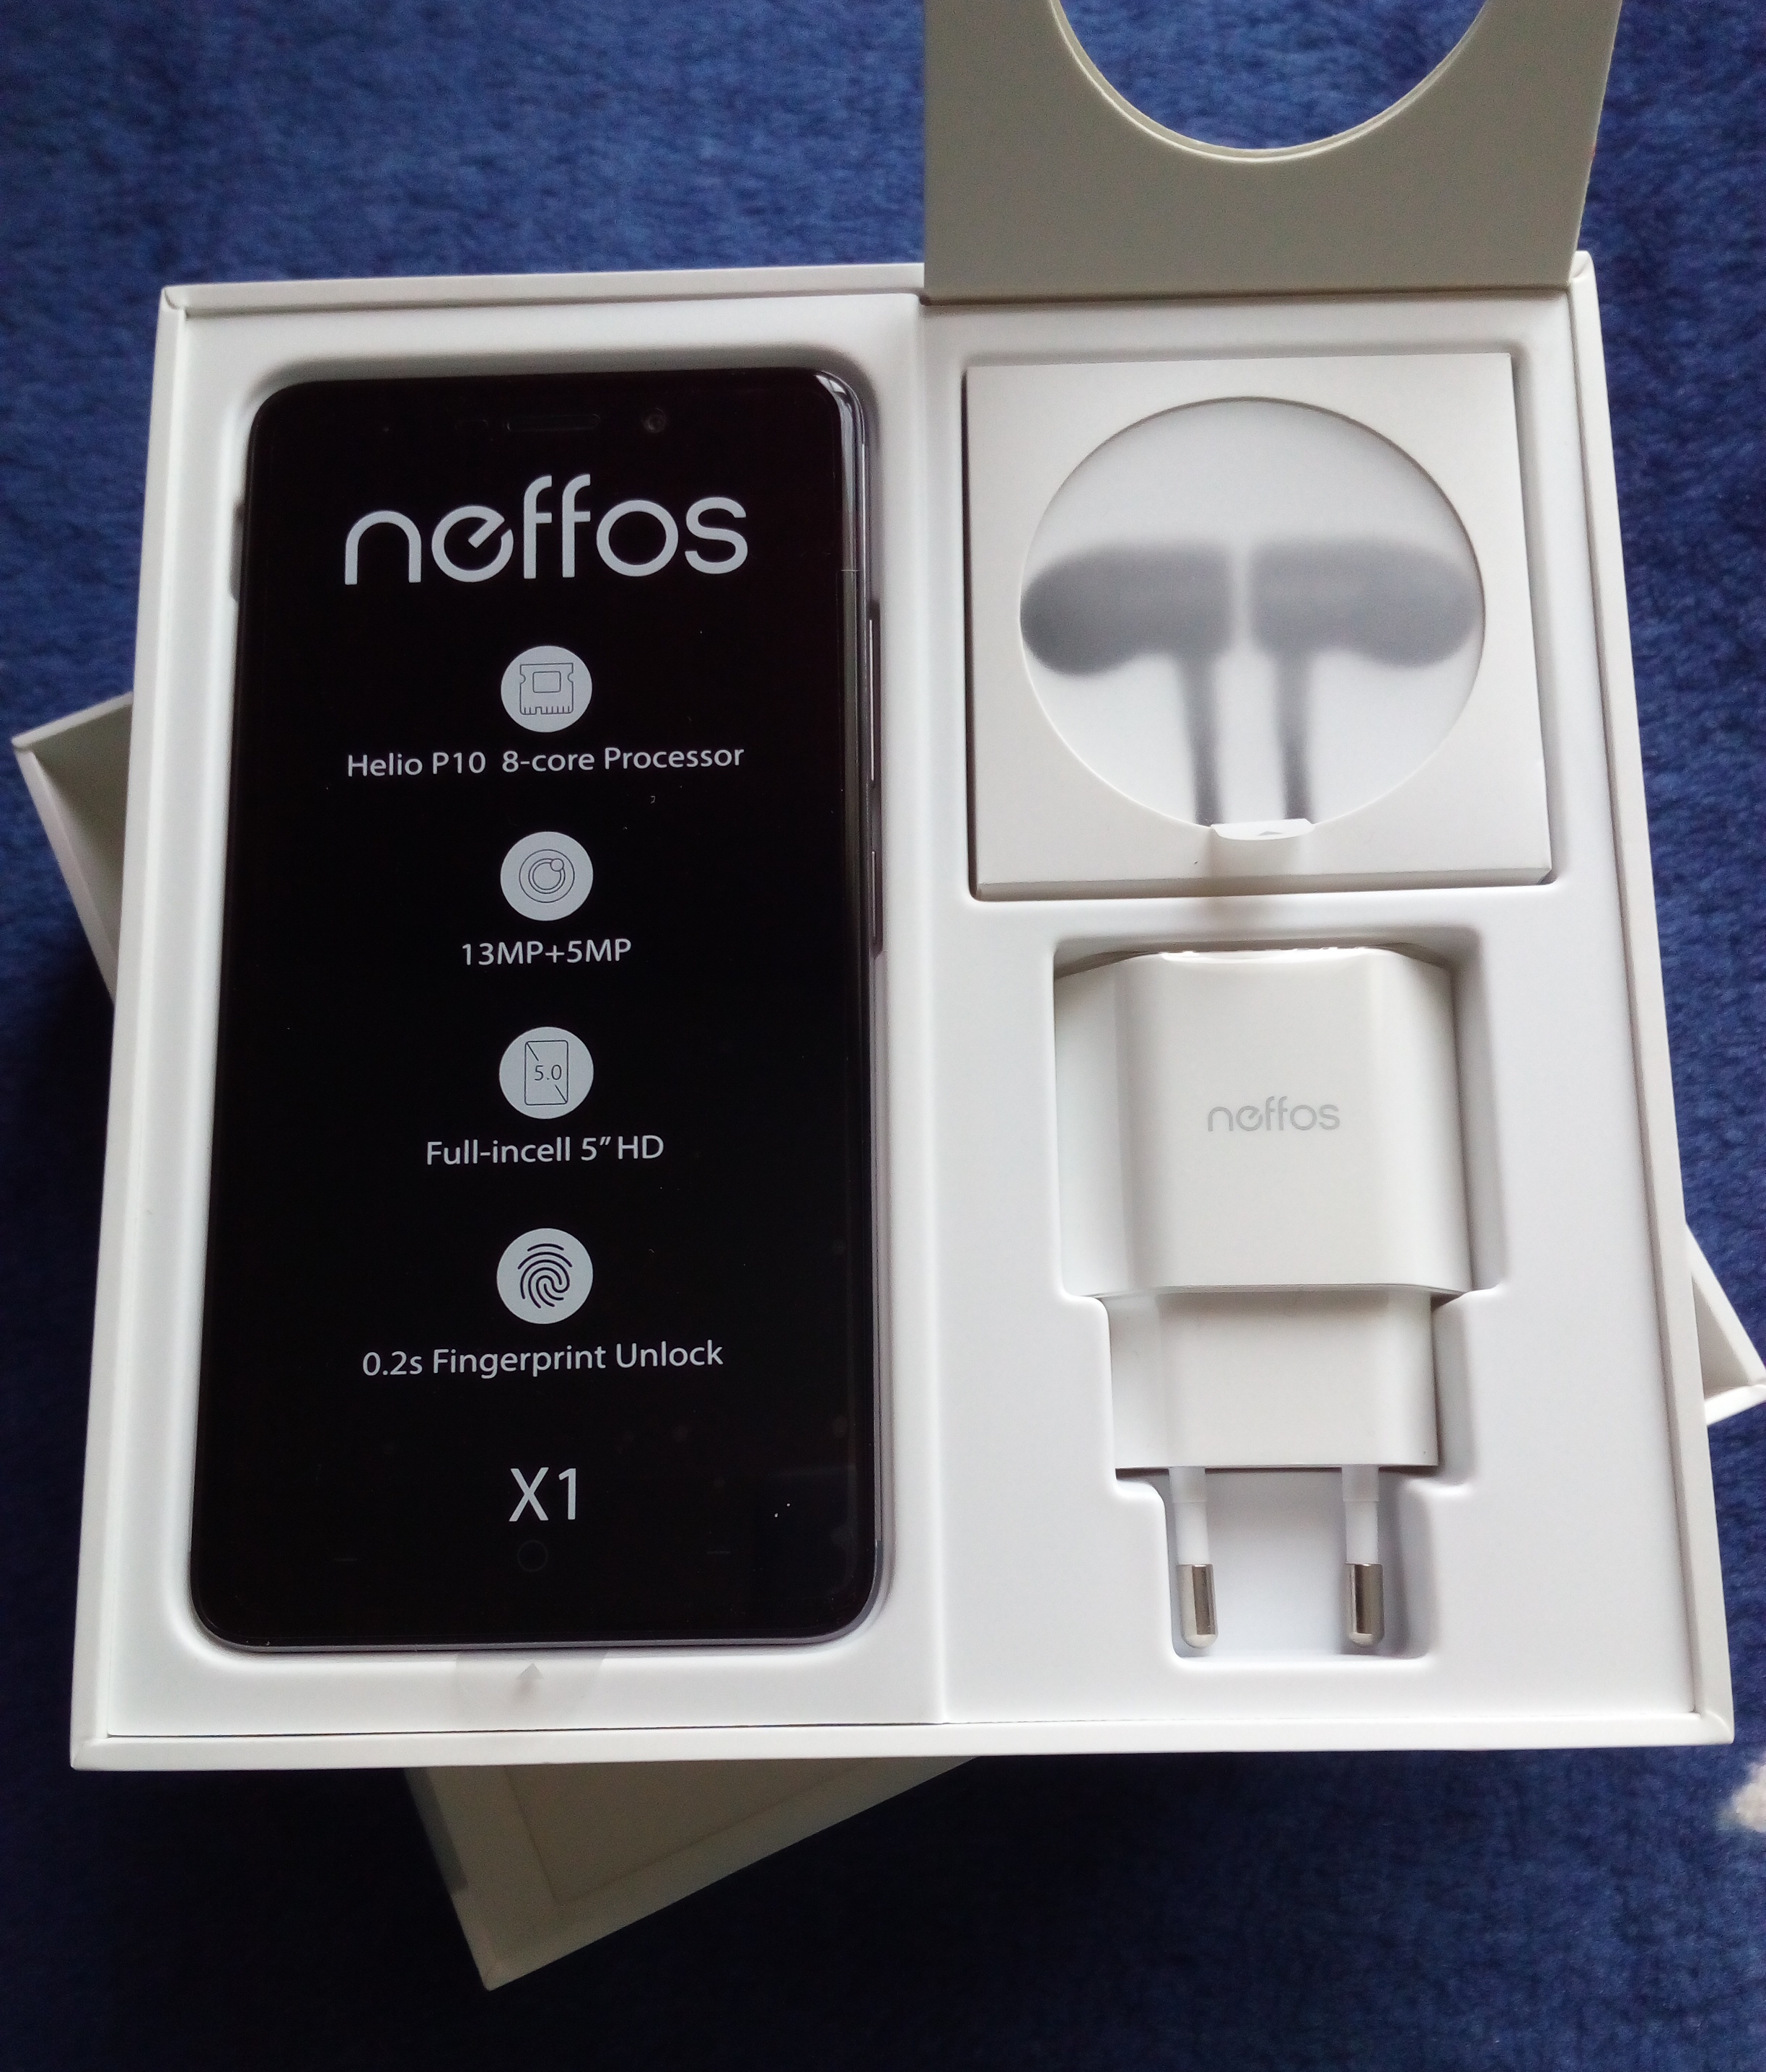 neffos-x1-tp-link-smartfon-opakowanie-zawartosc